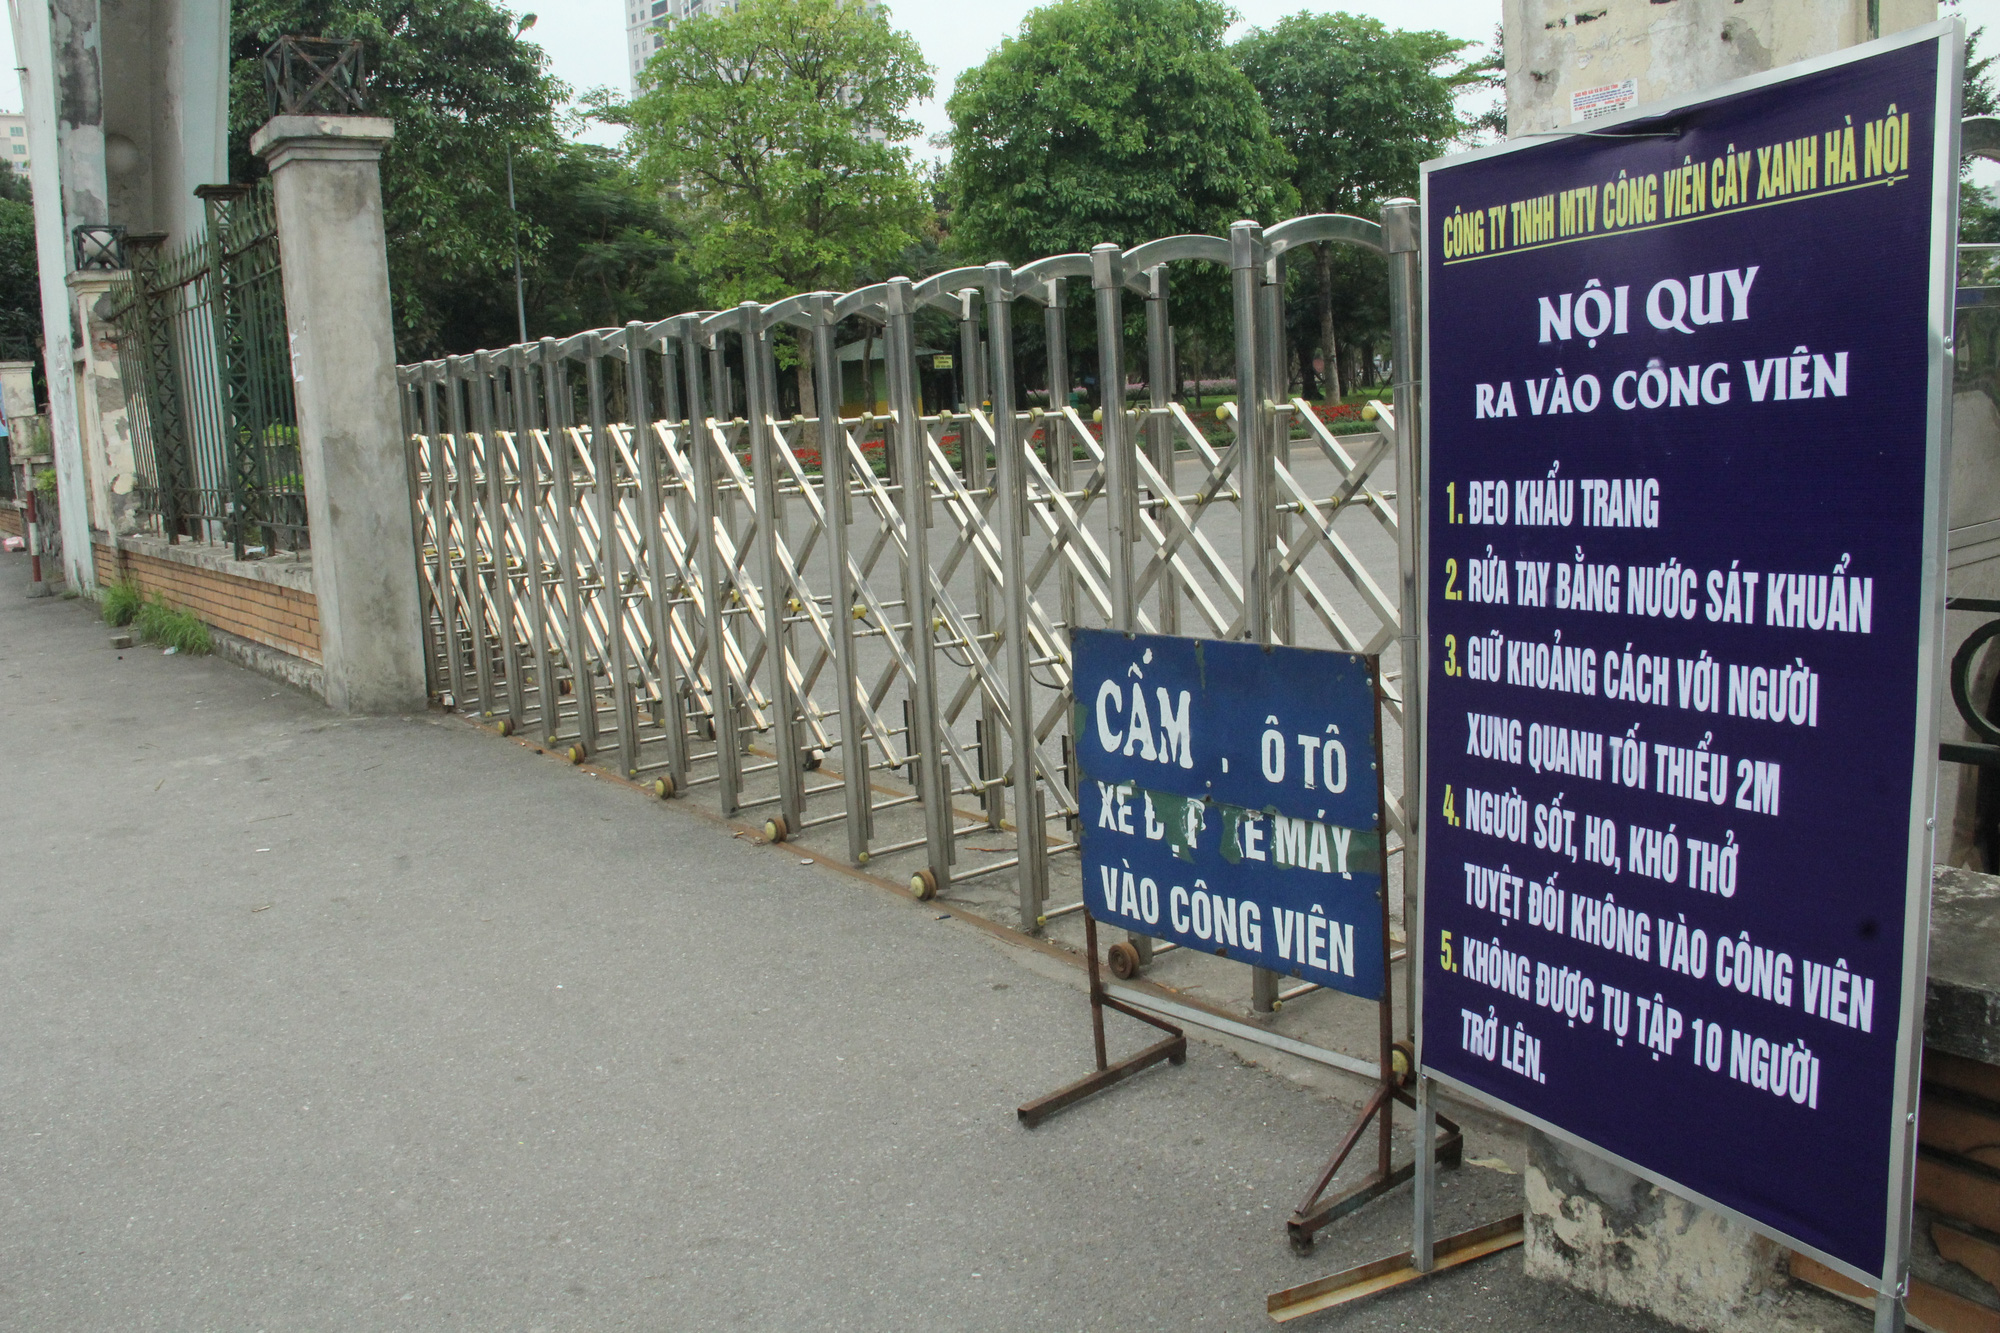 Các công viên lớn tại Hà Nội đồng loạt đóng cửa sau chỉ thị của Chính phủ về việc cách ly xã hội nhằm phòng chống dịch COVID-19 - Ảnh 2.